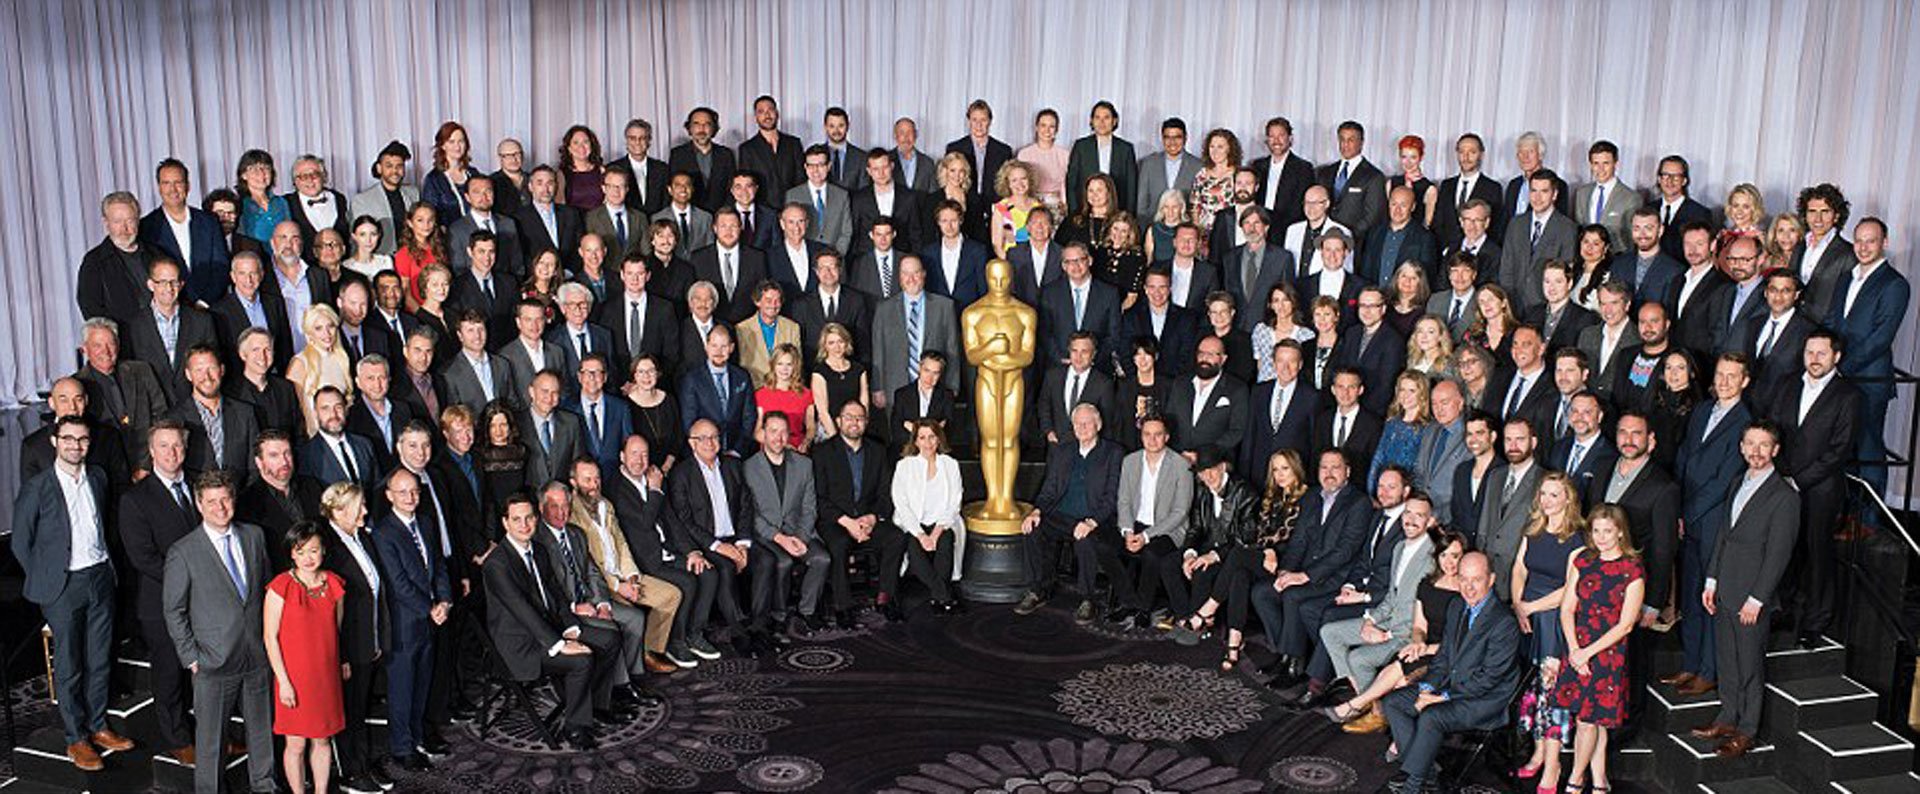 La foto del almuerzo de los Oscar que confirma la falta de diversidad en las nominaciones que despertó la indignación de los actores negros. Muchos, como Will Smith, llamaron a un boicot de la tradicional ceremonia